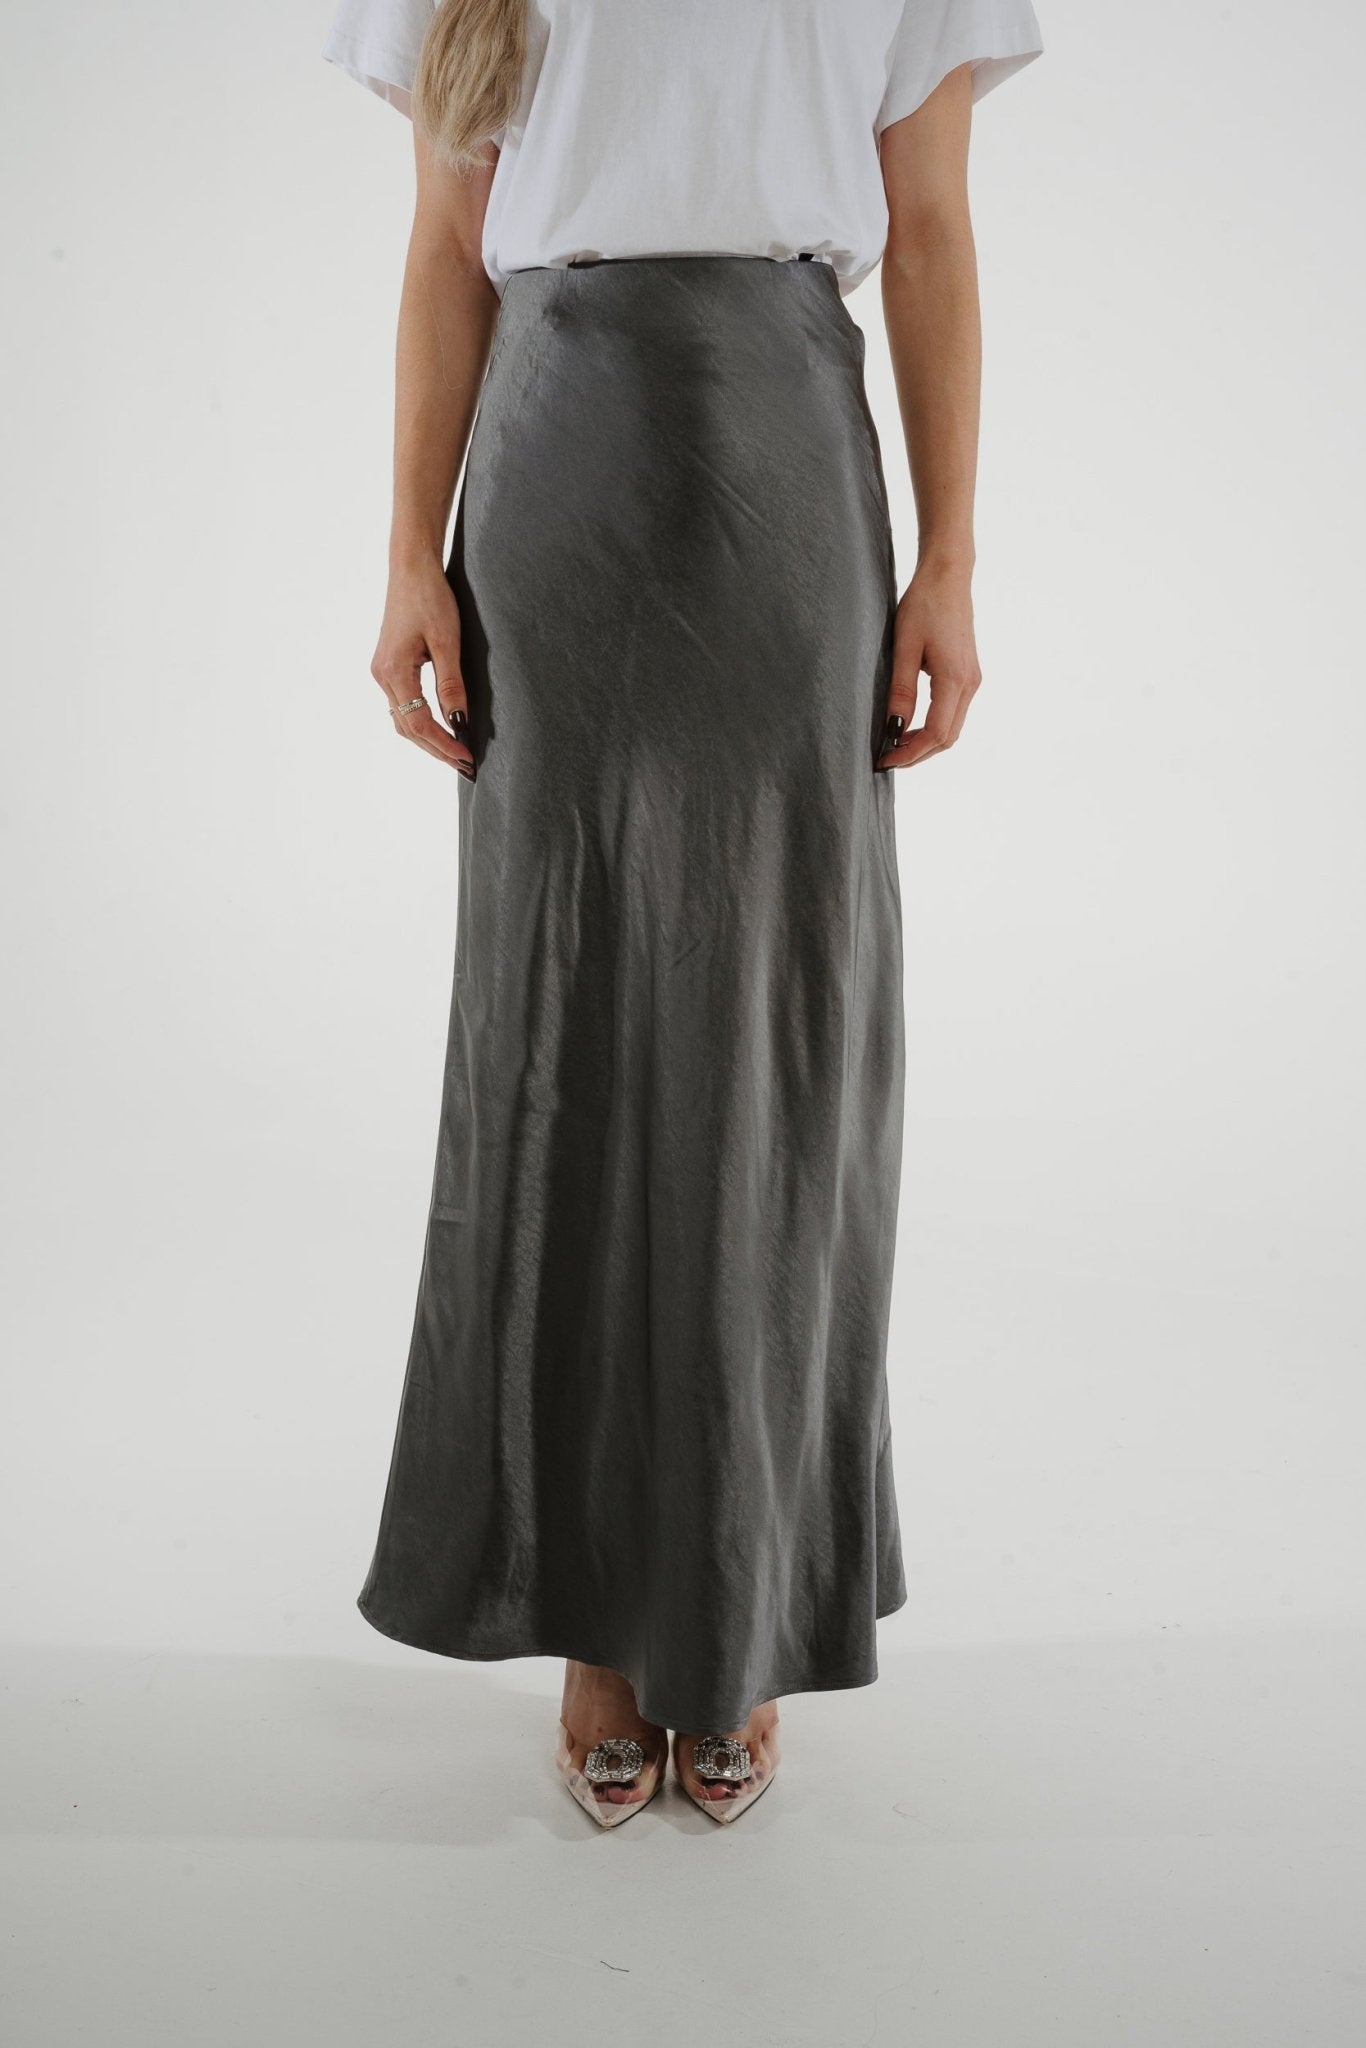 Jane Longline Satin Skirt In Grey - The Walk in Wardrobe